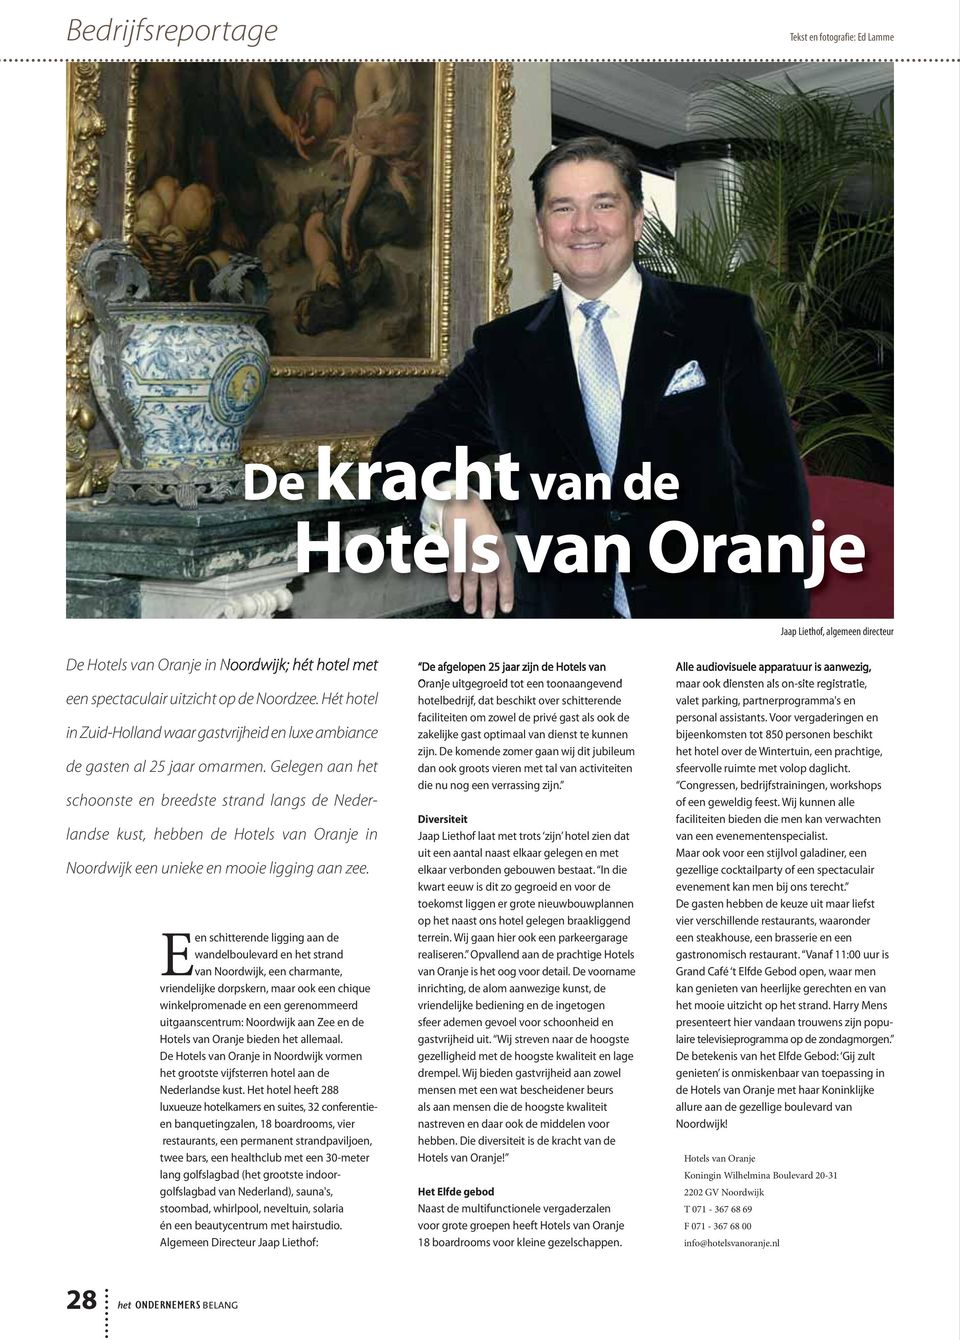 Gelegen aan het schoonste en breedste strand langs de Nederlandse kust, hebben de Hotels van Oranje in Noordwijk een unieke en mooie ligging aan zee.